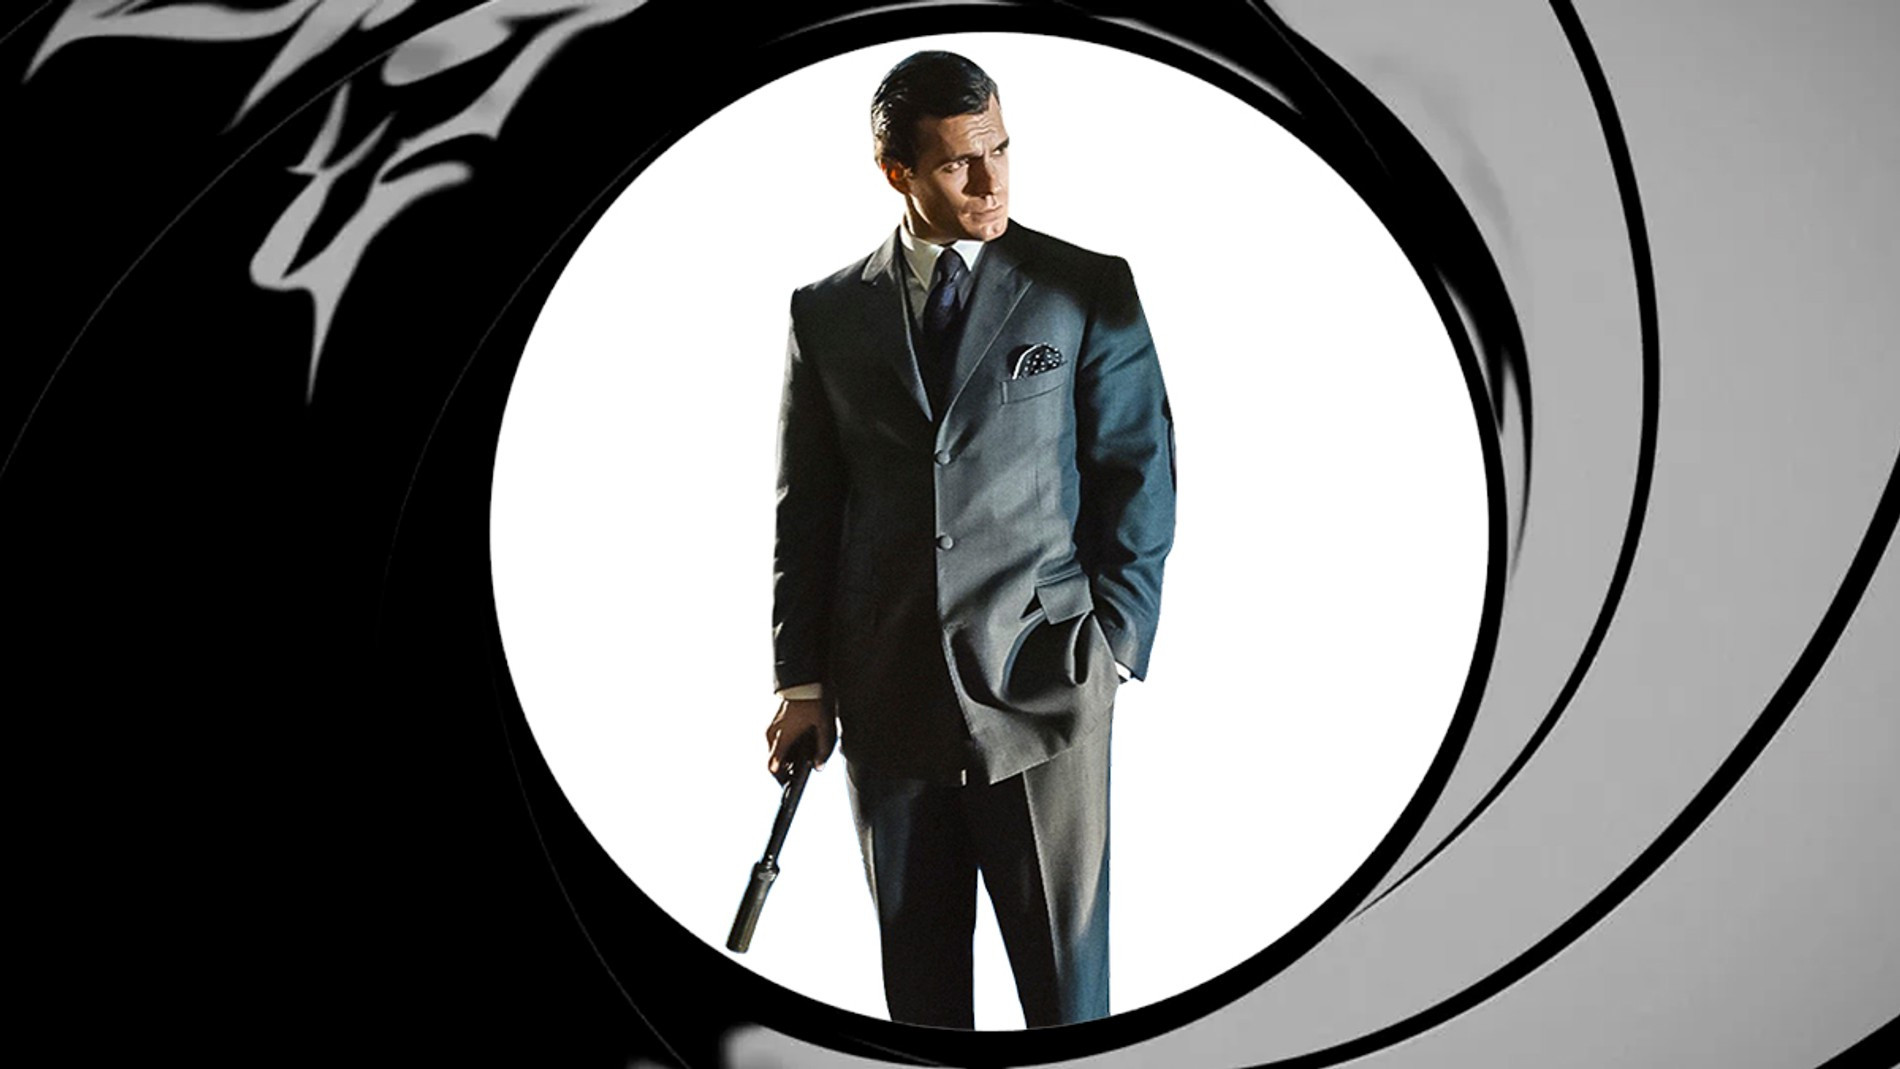 Генри Кавилл — новый агент 007?
Фото: Getty